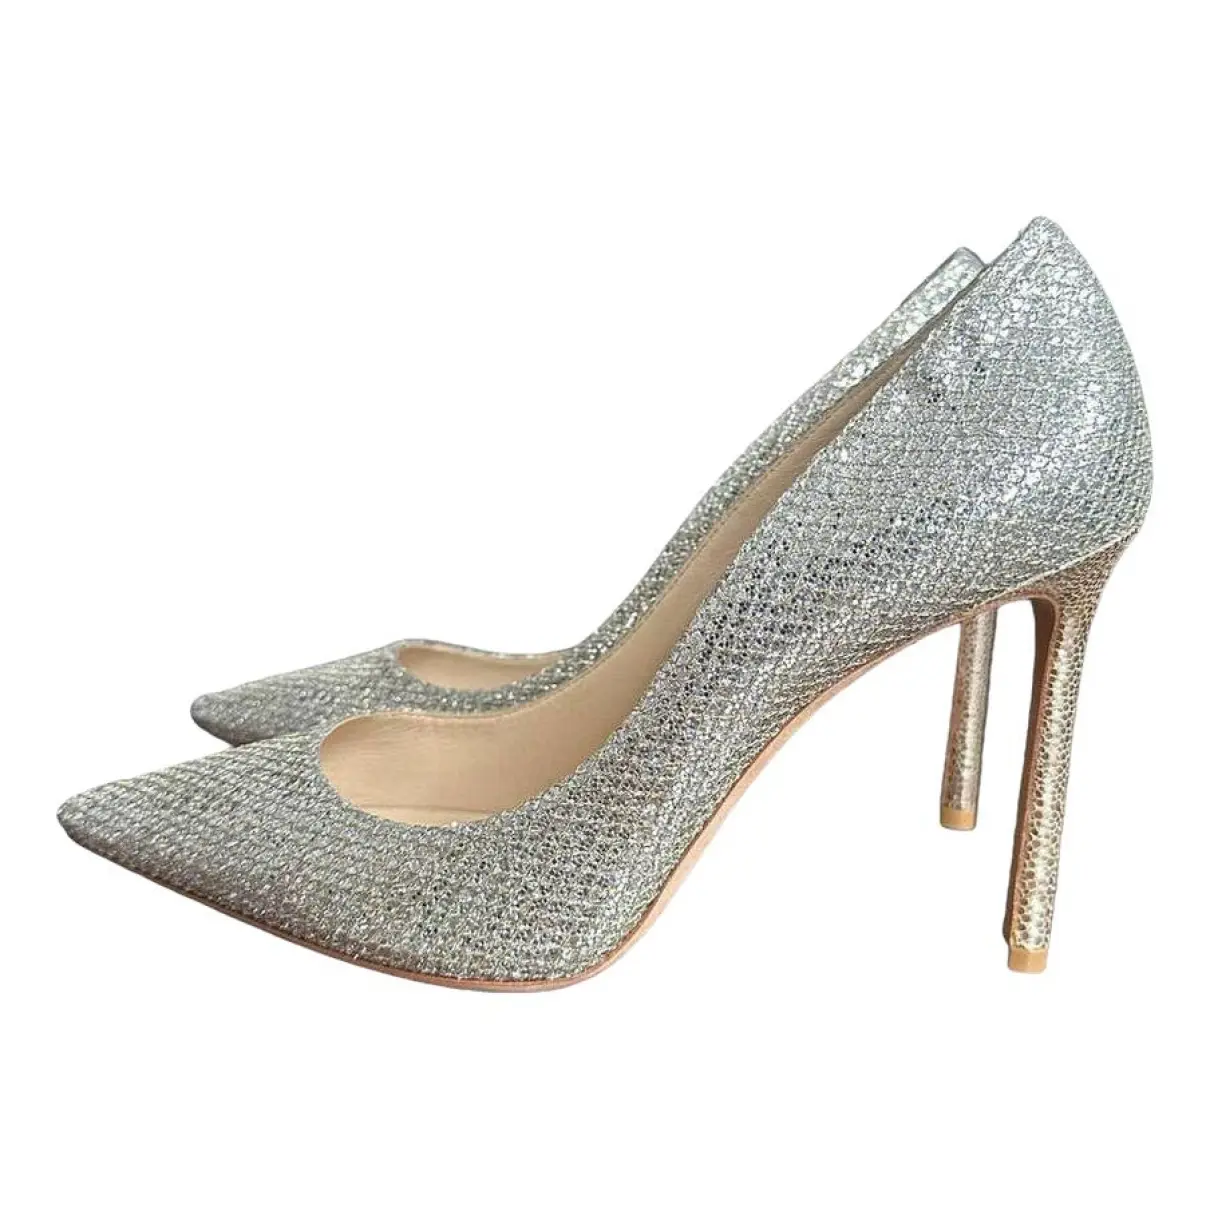 Romy glitter heels